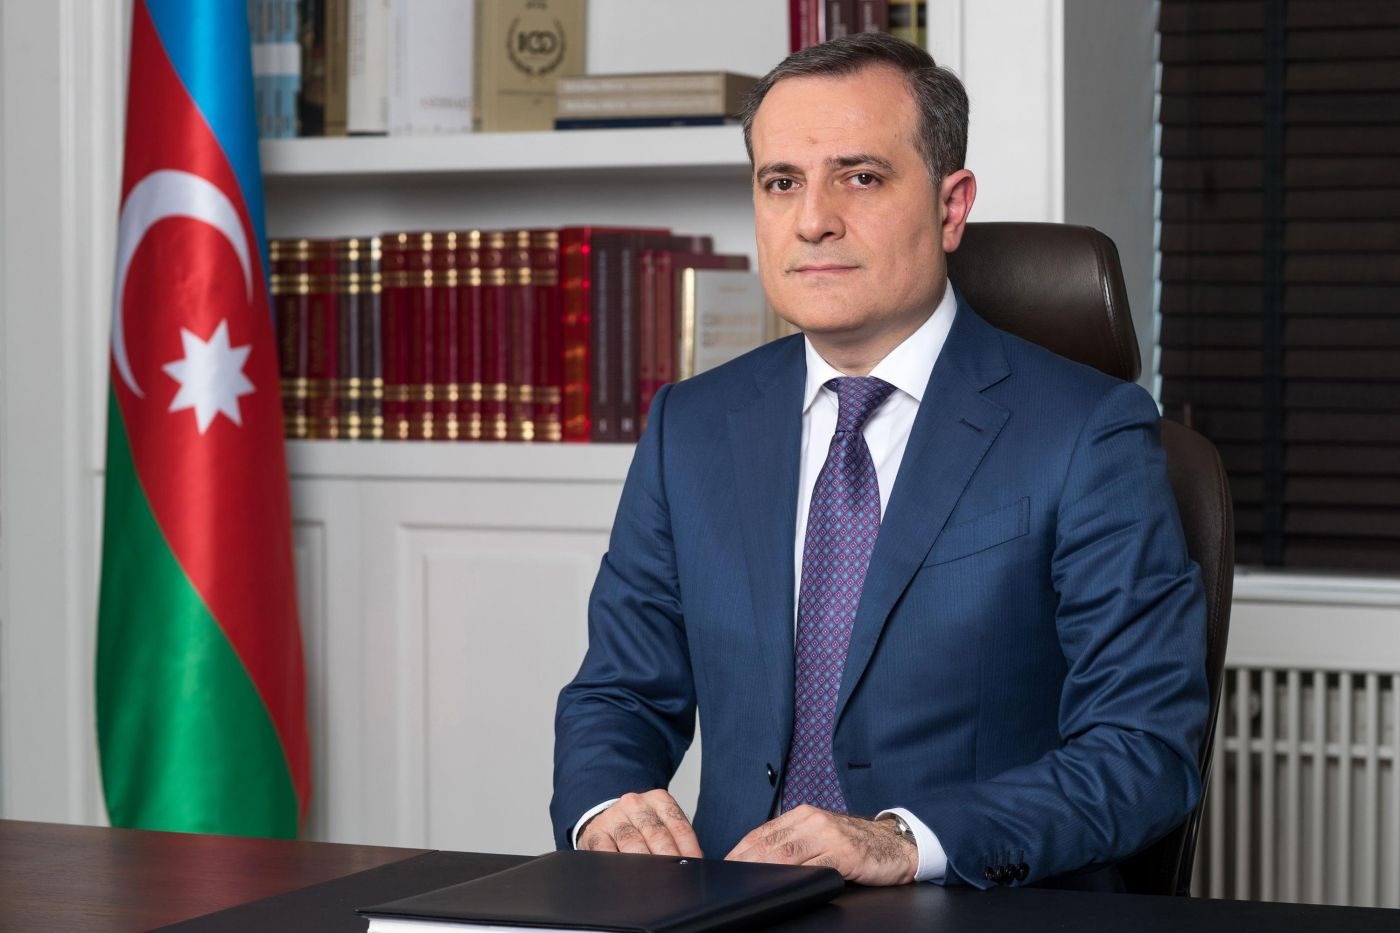 Джейхун Байрамов отправится в Москву на переговоры по Карабаху - ОФИЦИАЛЬНО